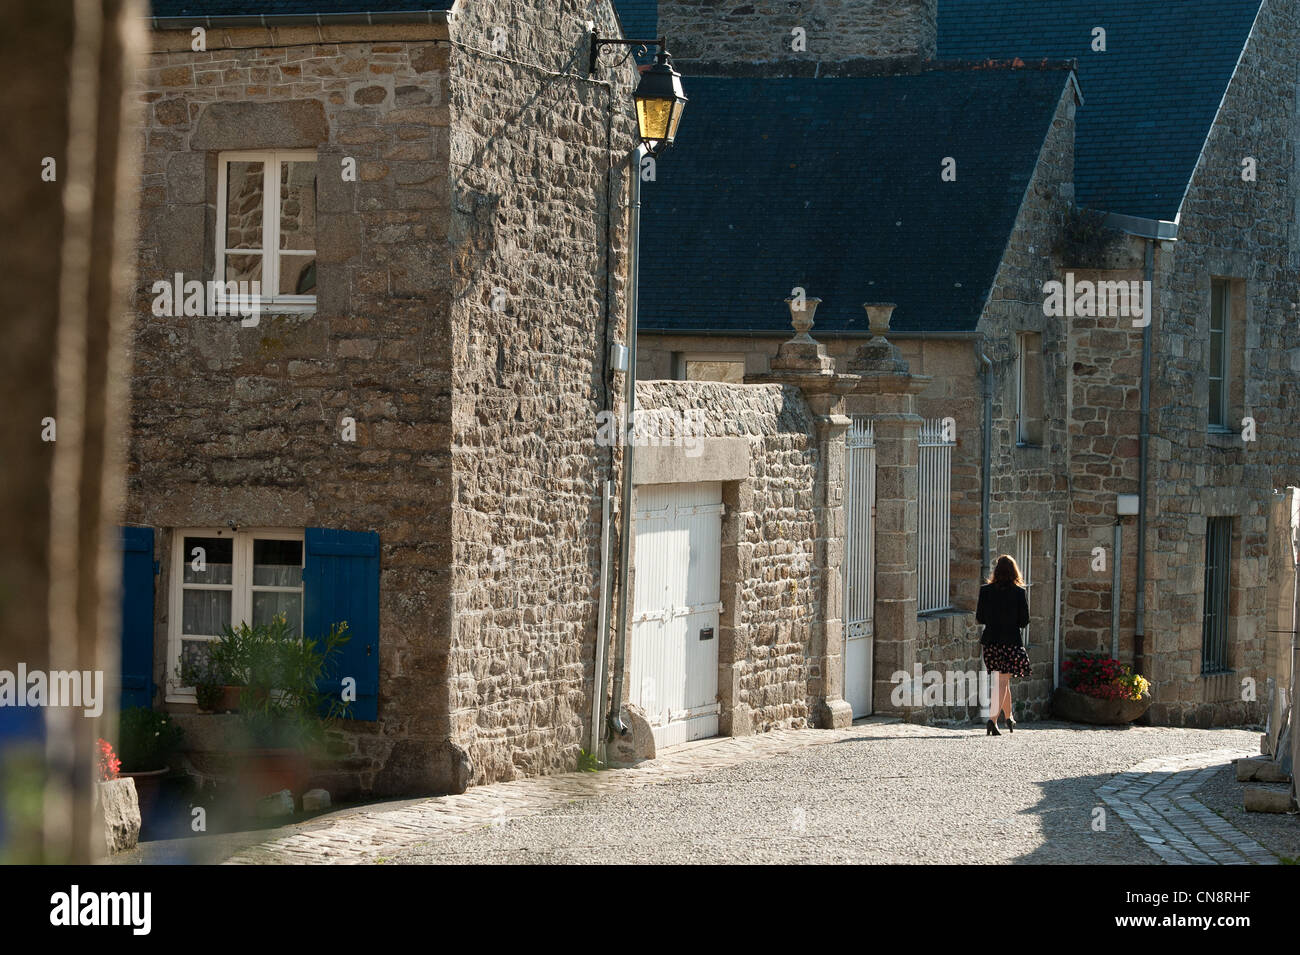 France, Cotes d'Armor, Moncontour de Bretagne, labelled Les Plus Beaux Villages de France (The Most Beautiful Villages of Stock Photo